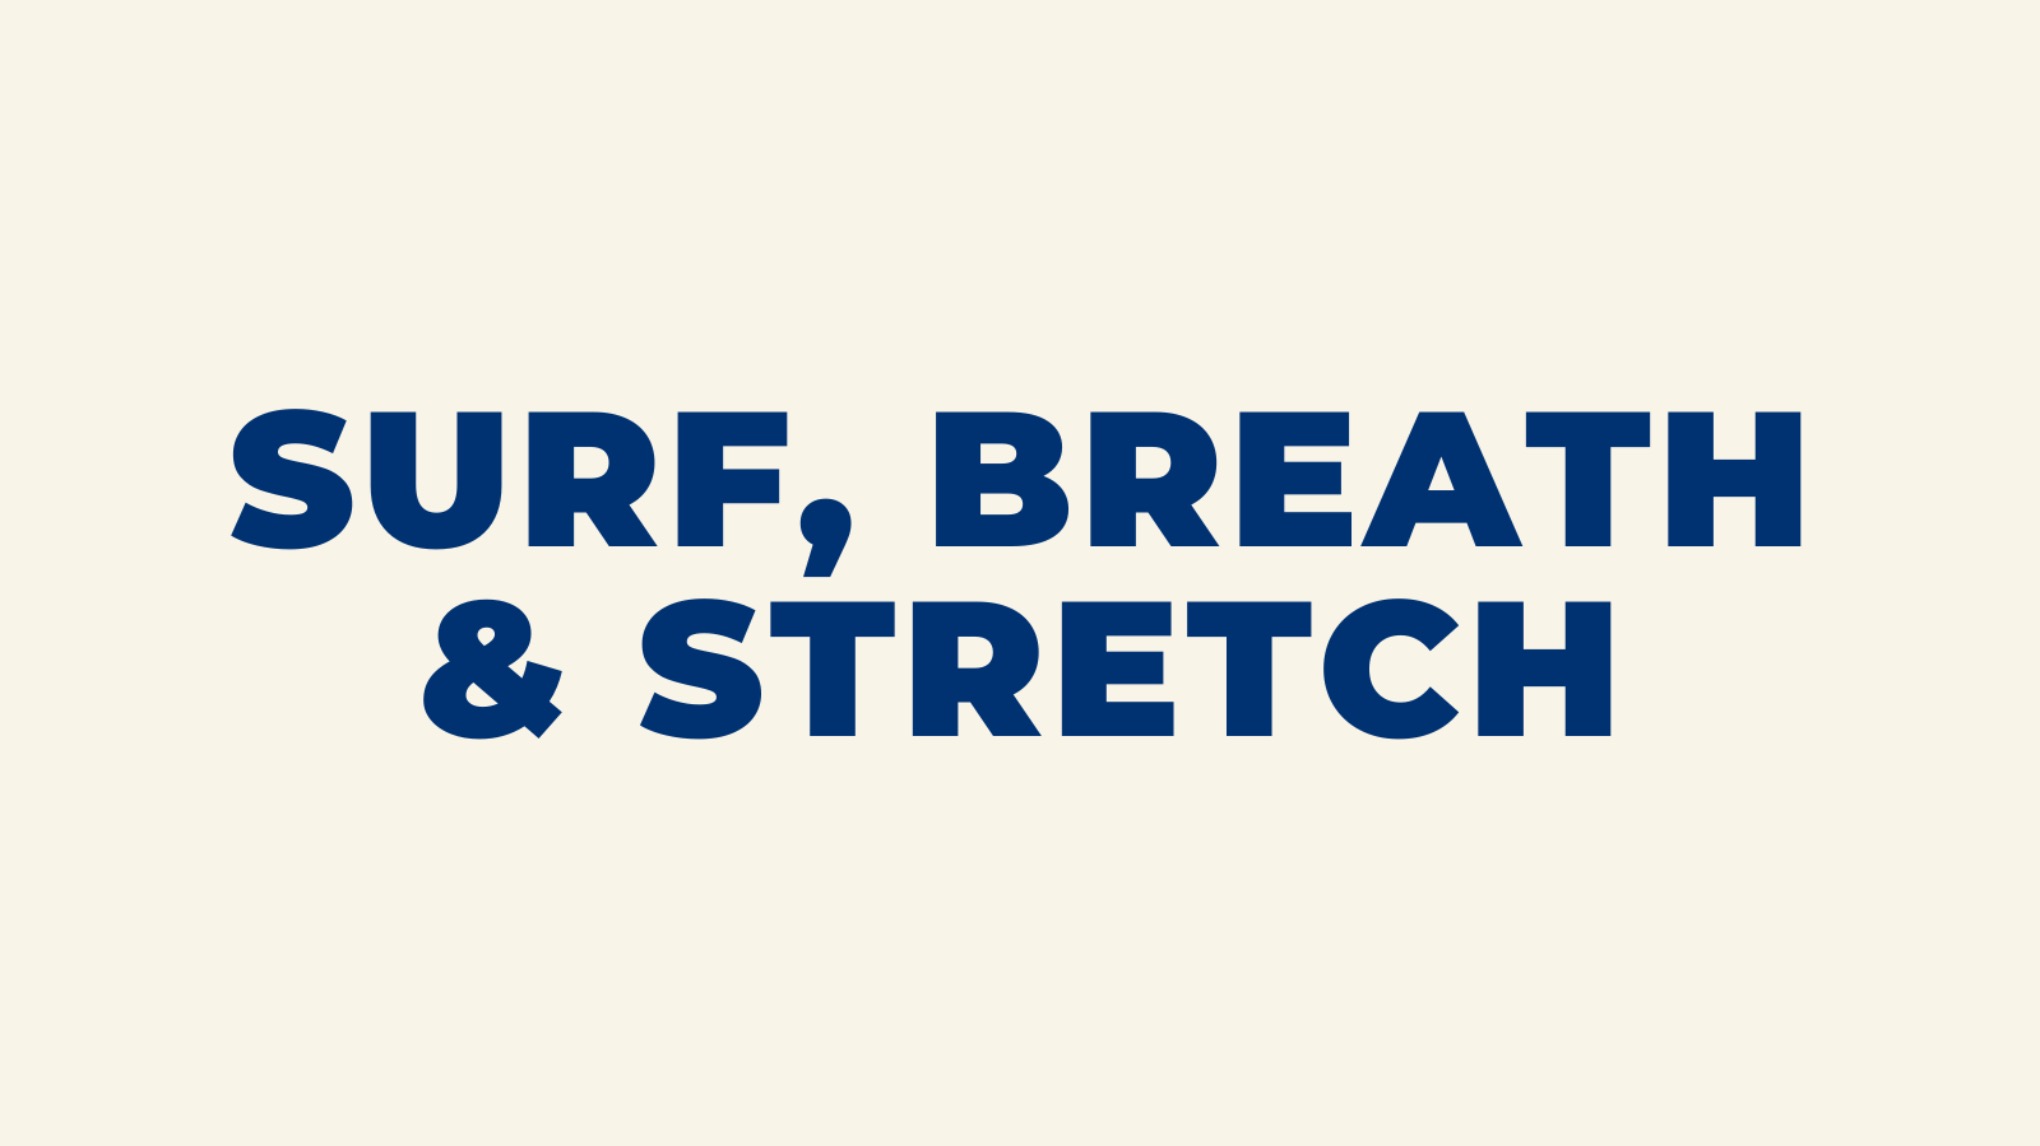 Surf, Breath & stretch